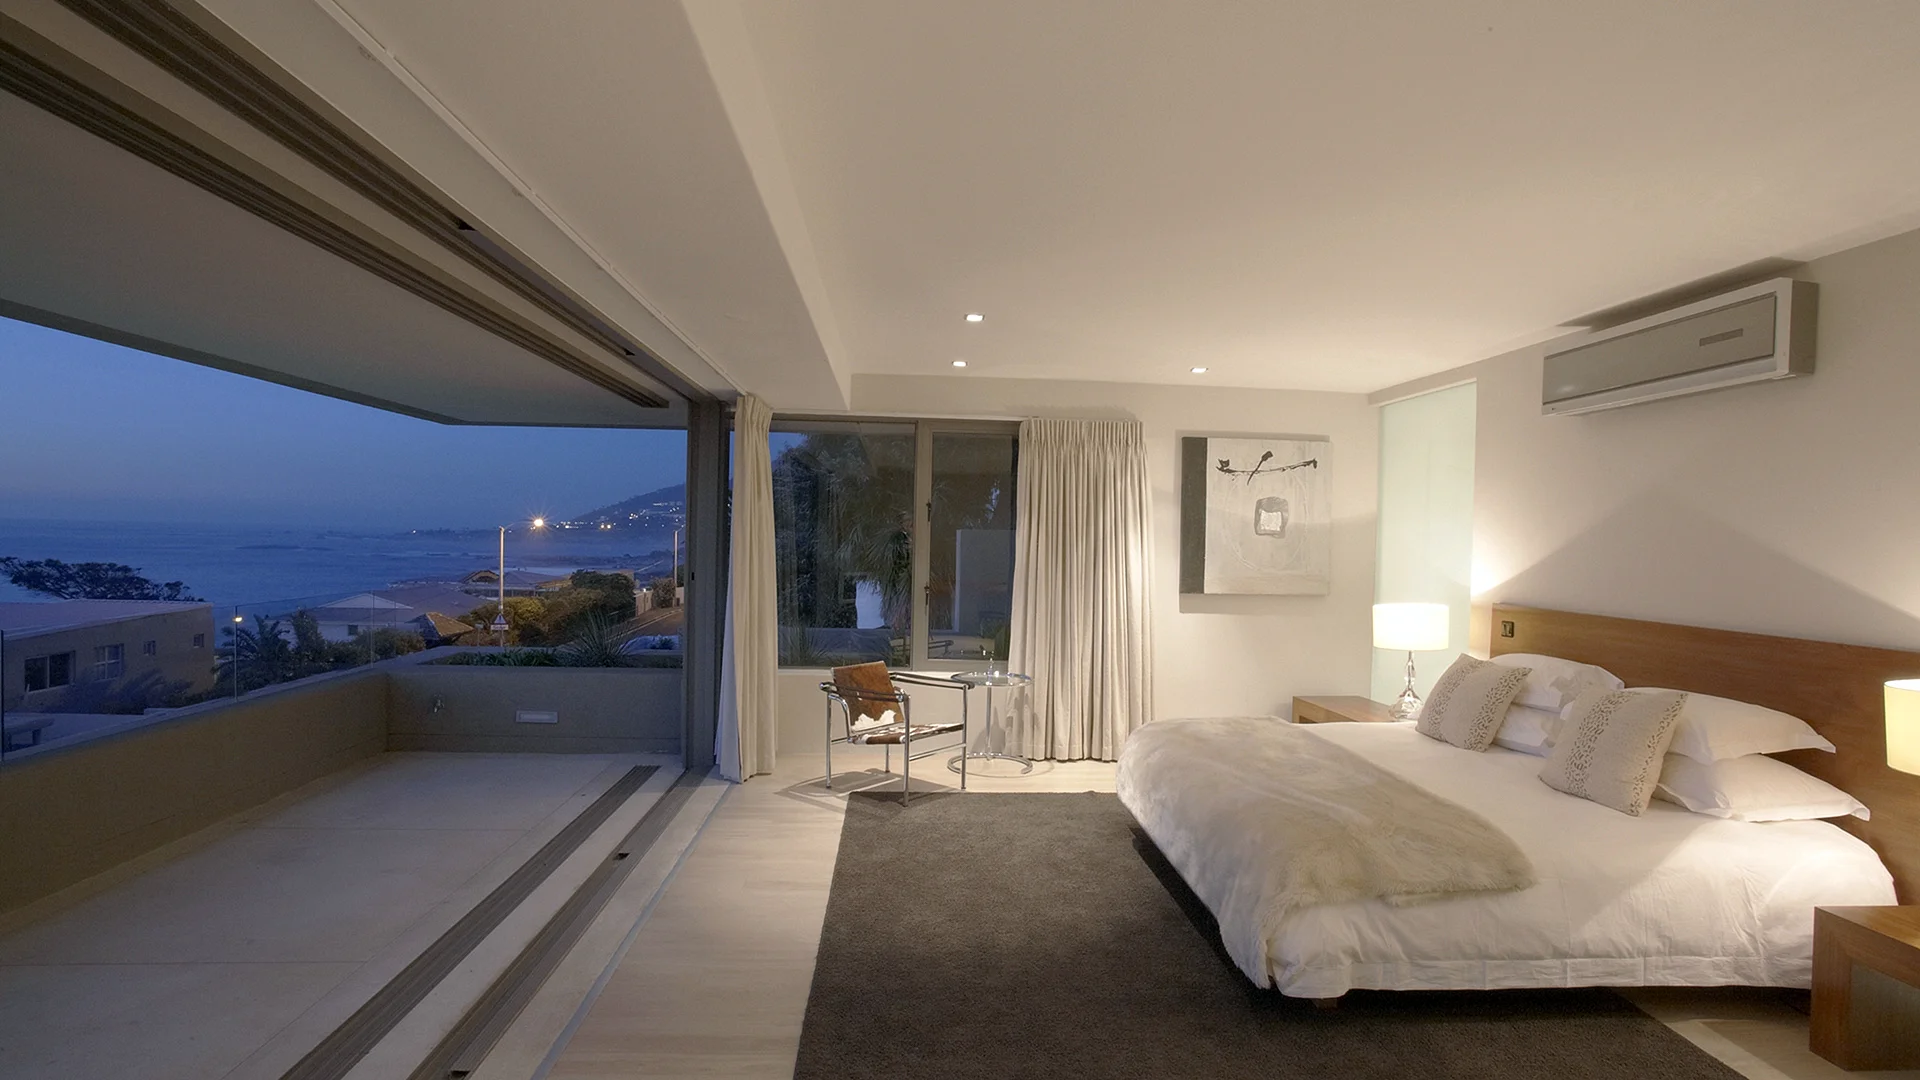 Luxury Apartment Bedroom Wallpaper